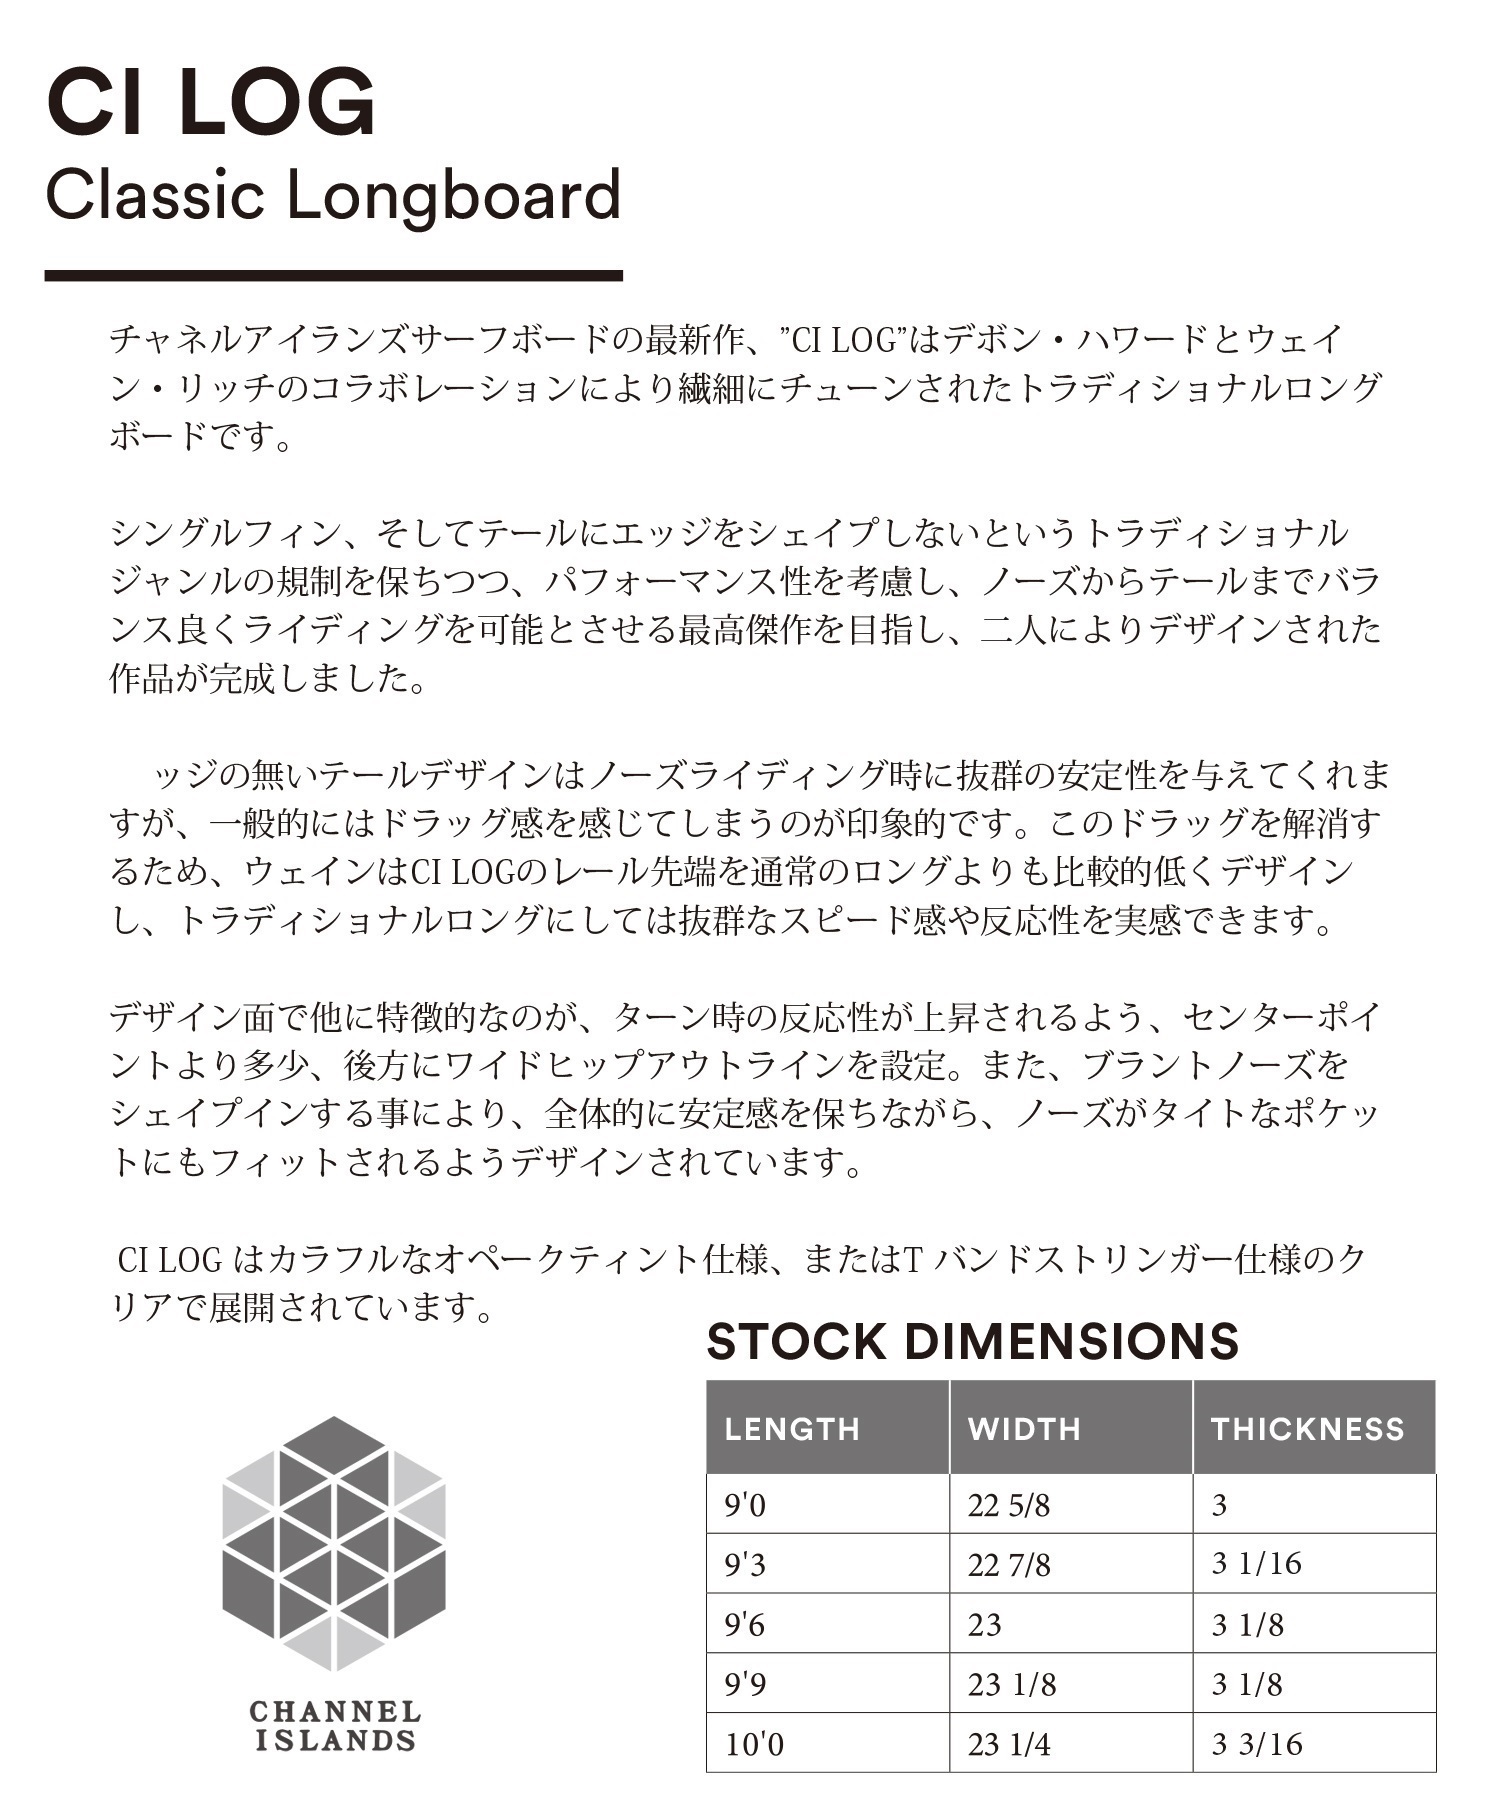 CHANNEL ISLANDS チャネルアイランズ CI LOG シーアイログ 9'0 サーフボード ロングボード SINGLE ムラサキスポーツ アルメリック(MUS-9.0)